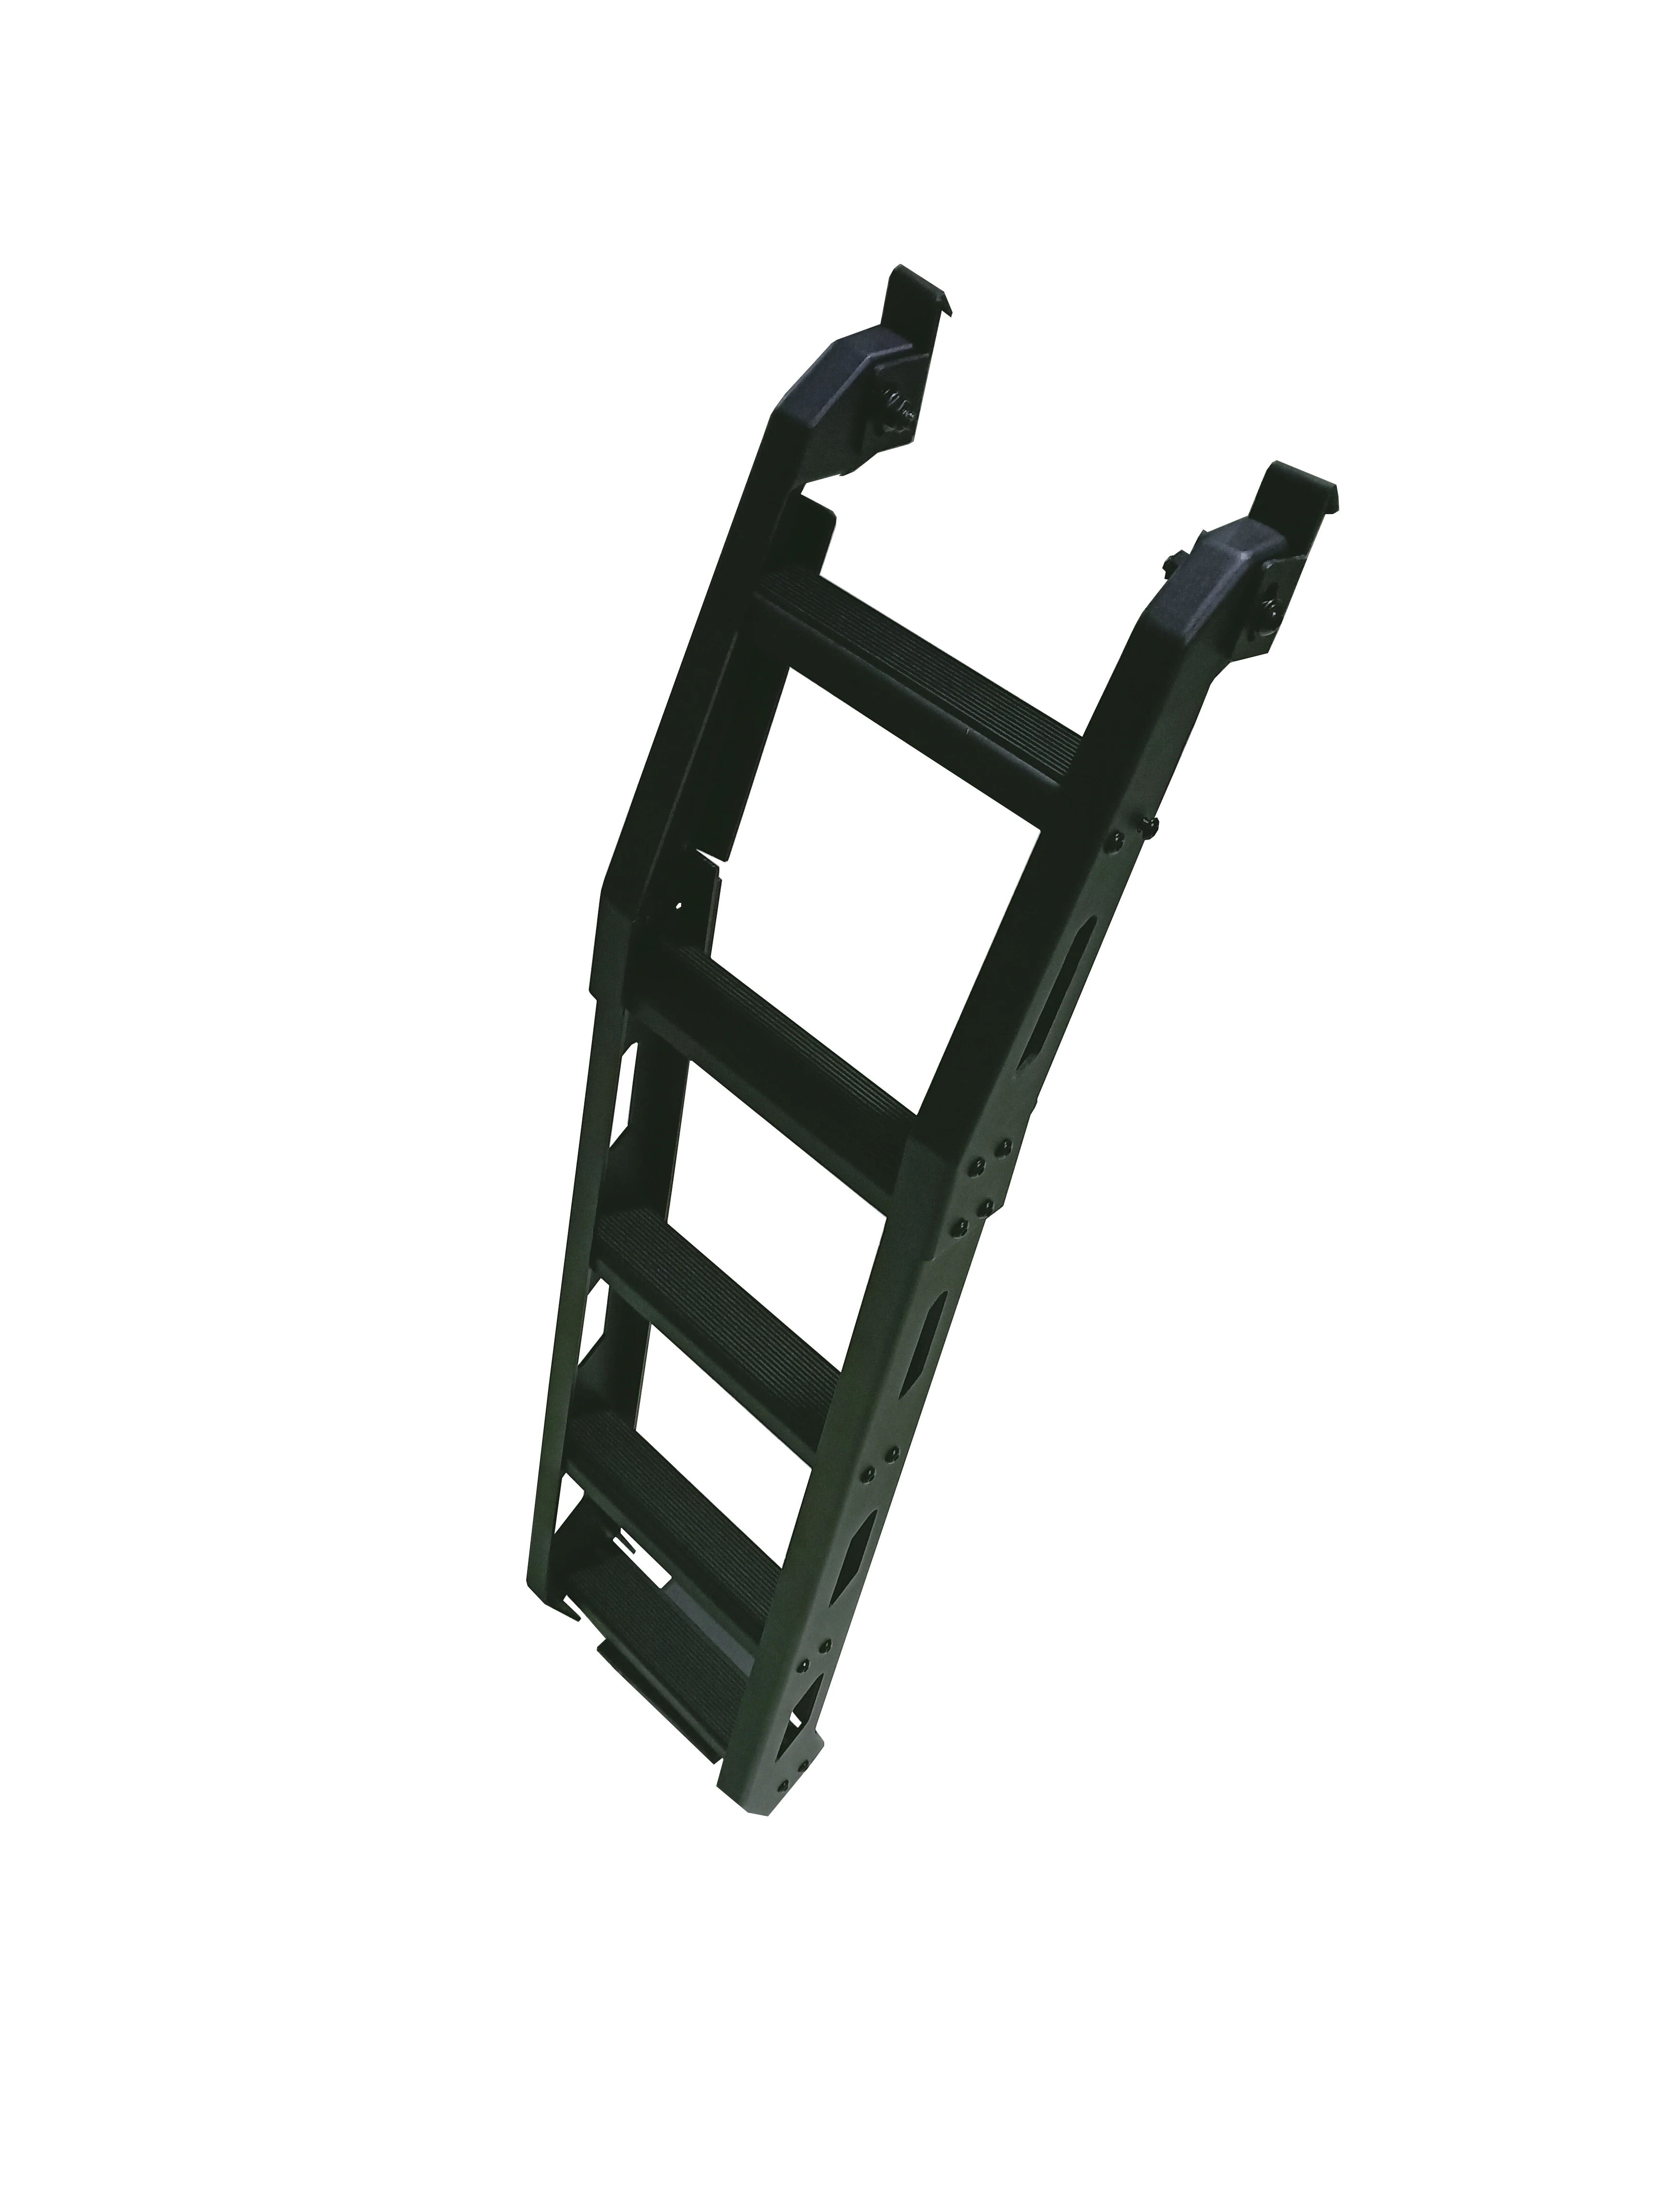 
Suzuki Jimny Ladder A Rear Door Ladder Fit For Jimny JB64 JB74 